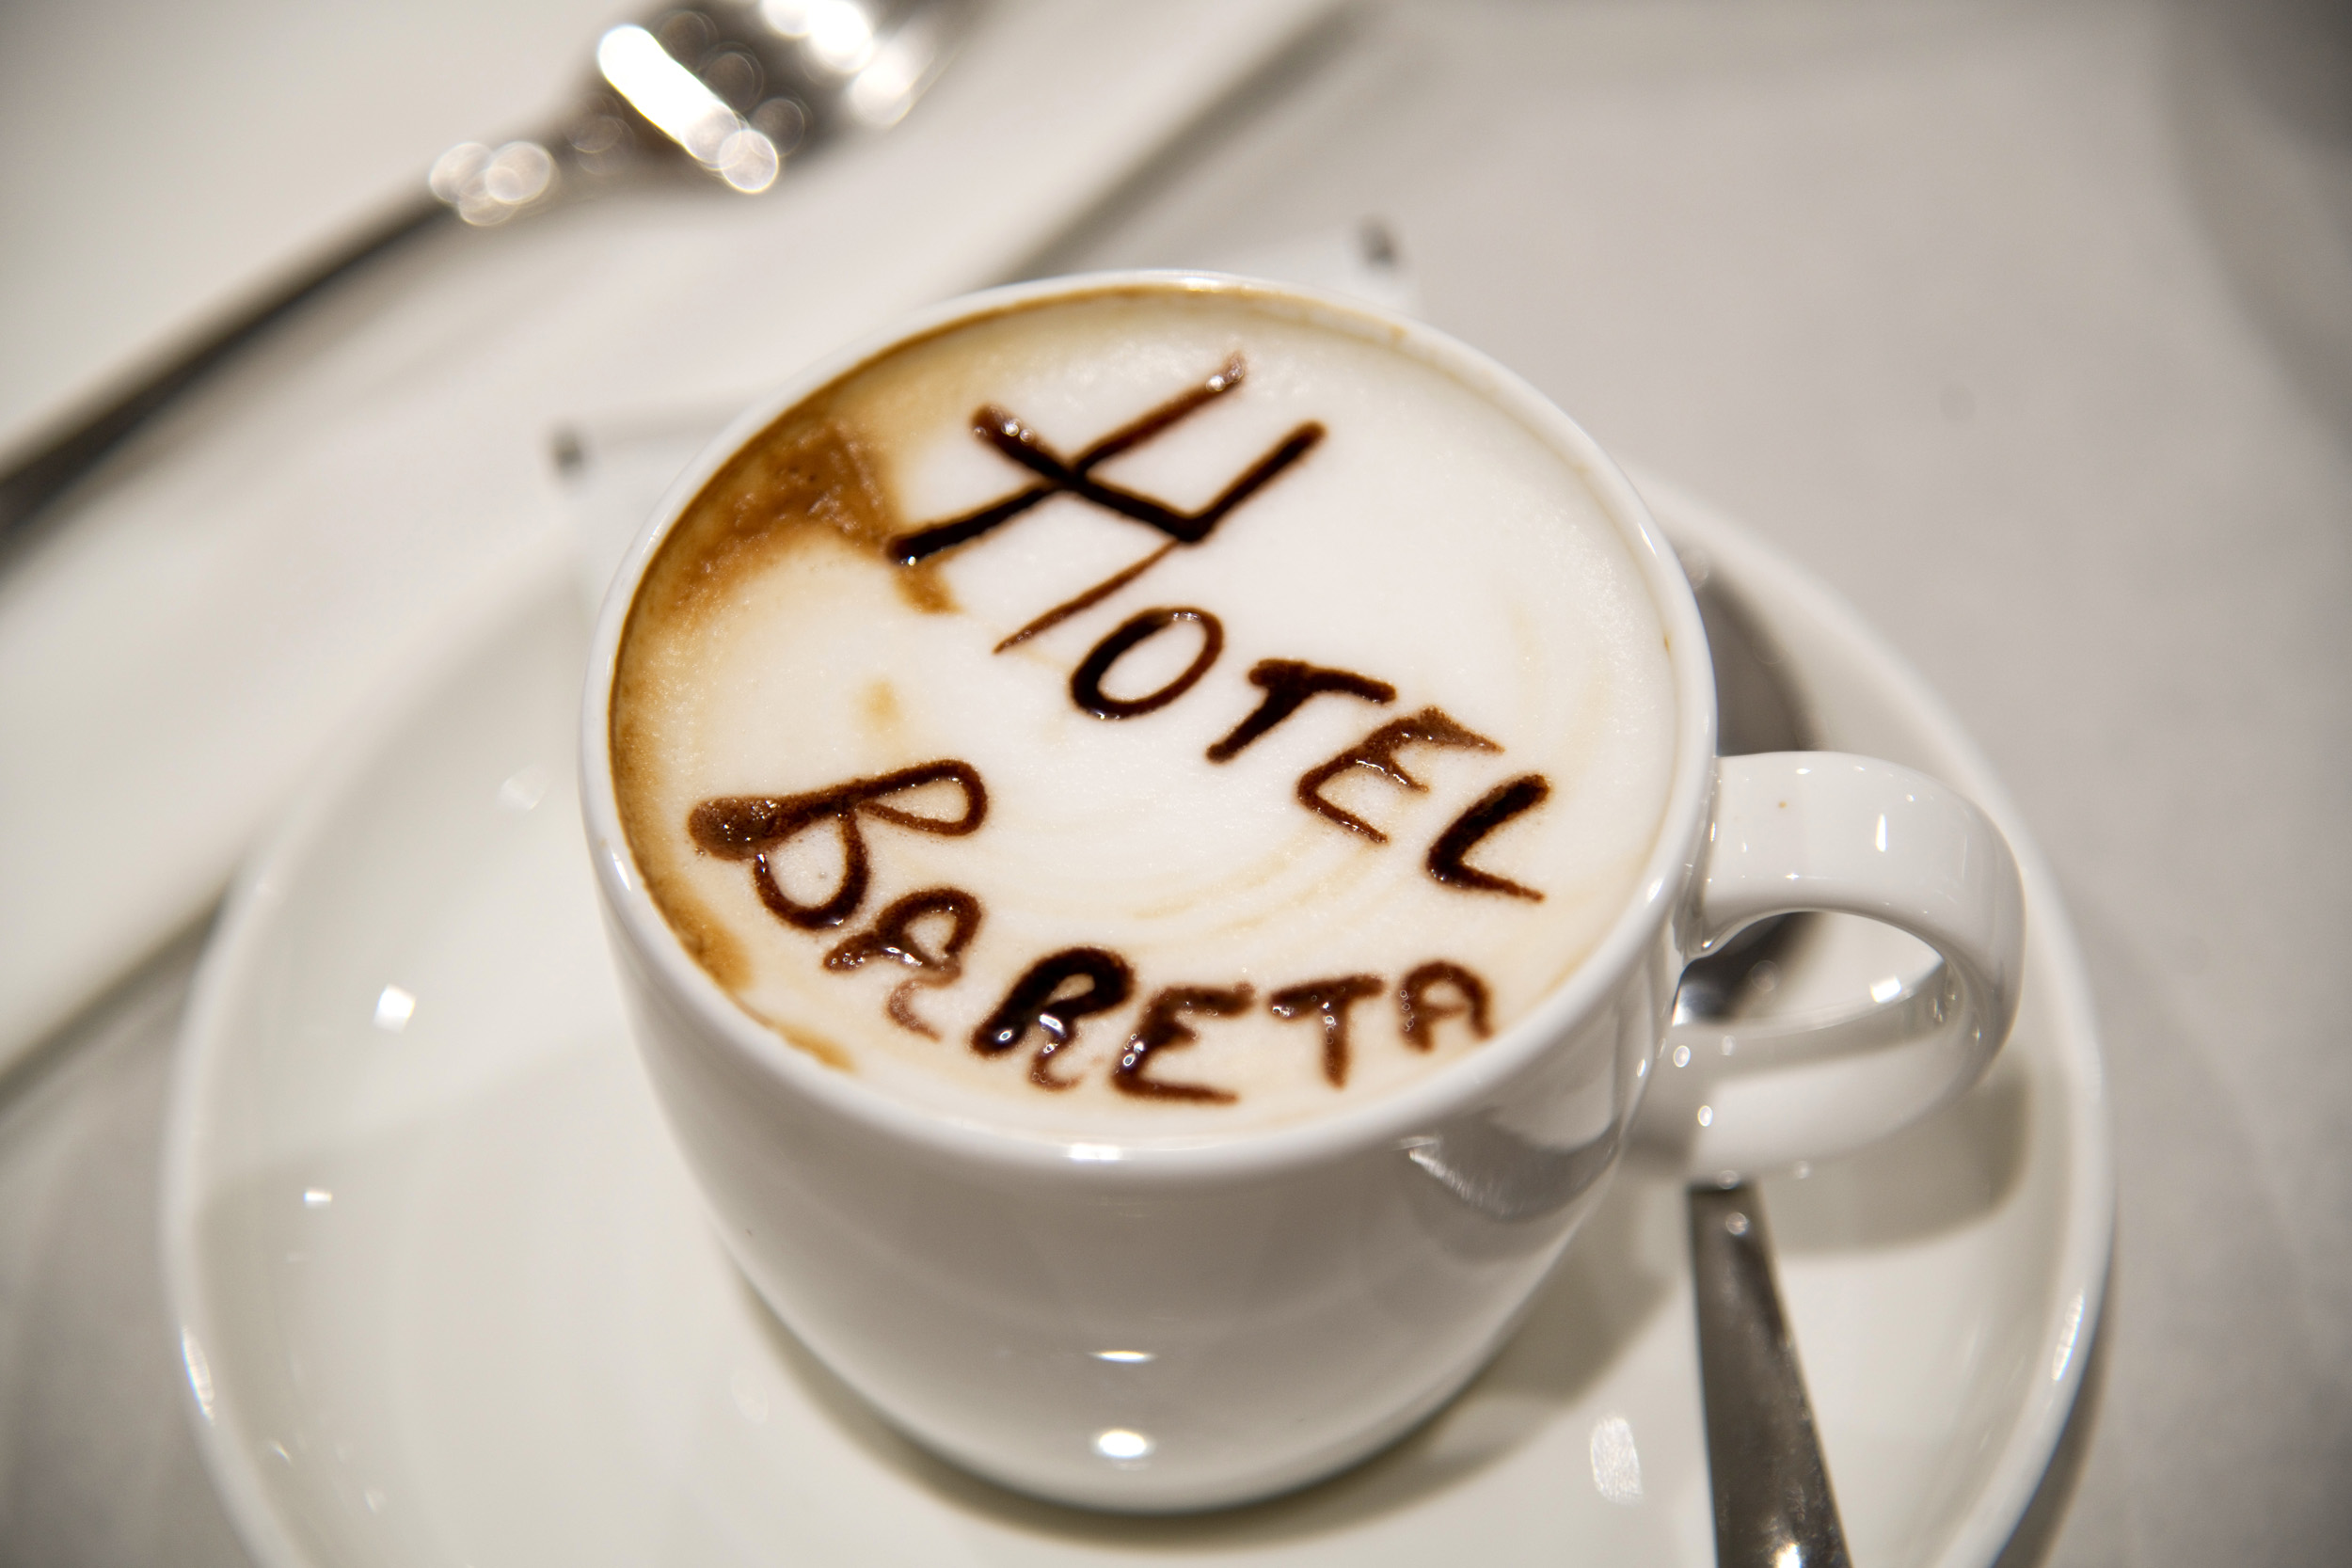 عکس های Hotel Bareta